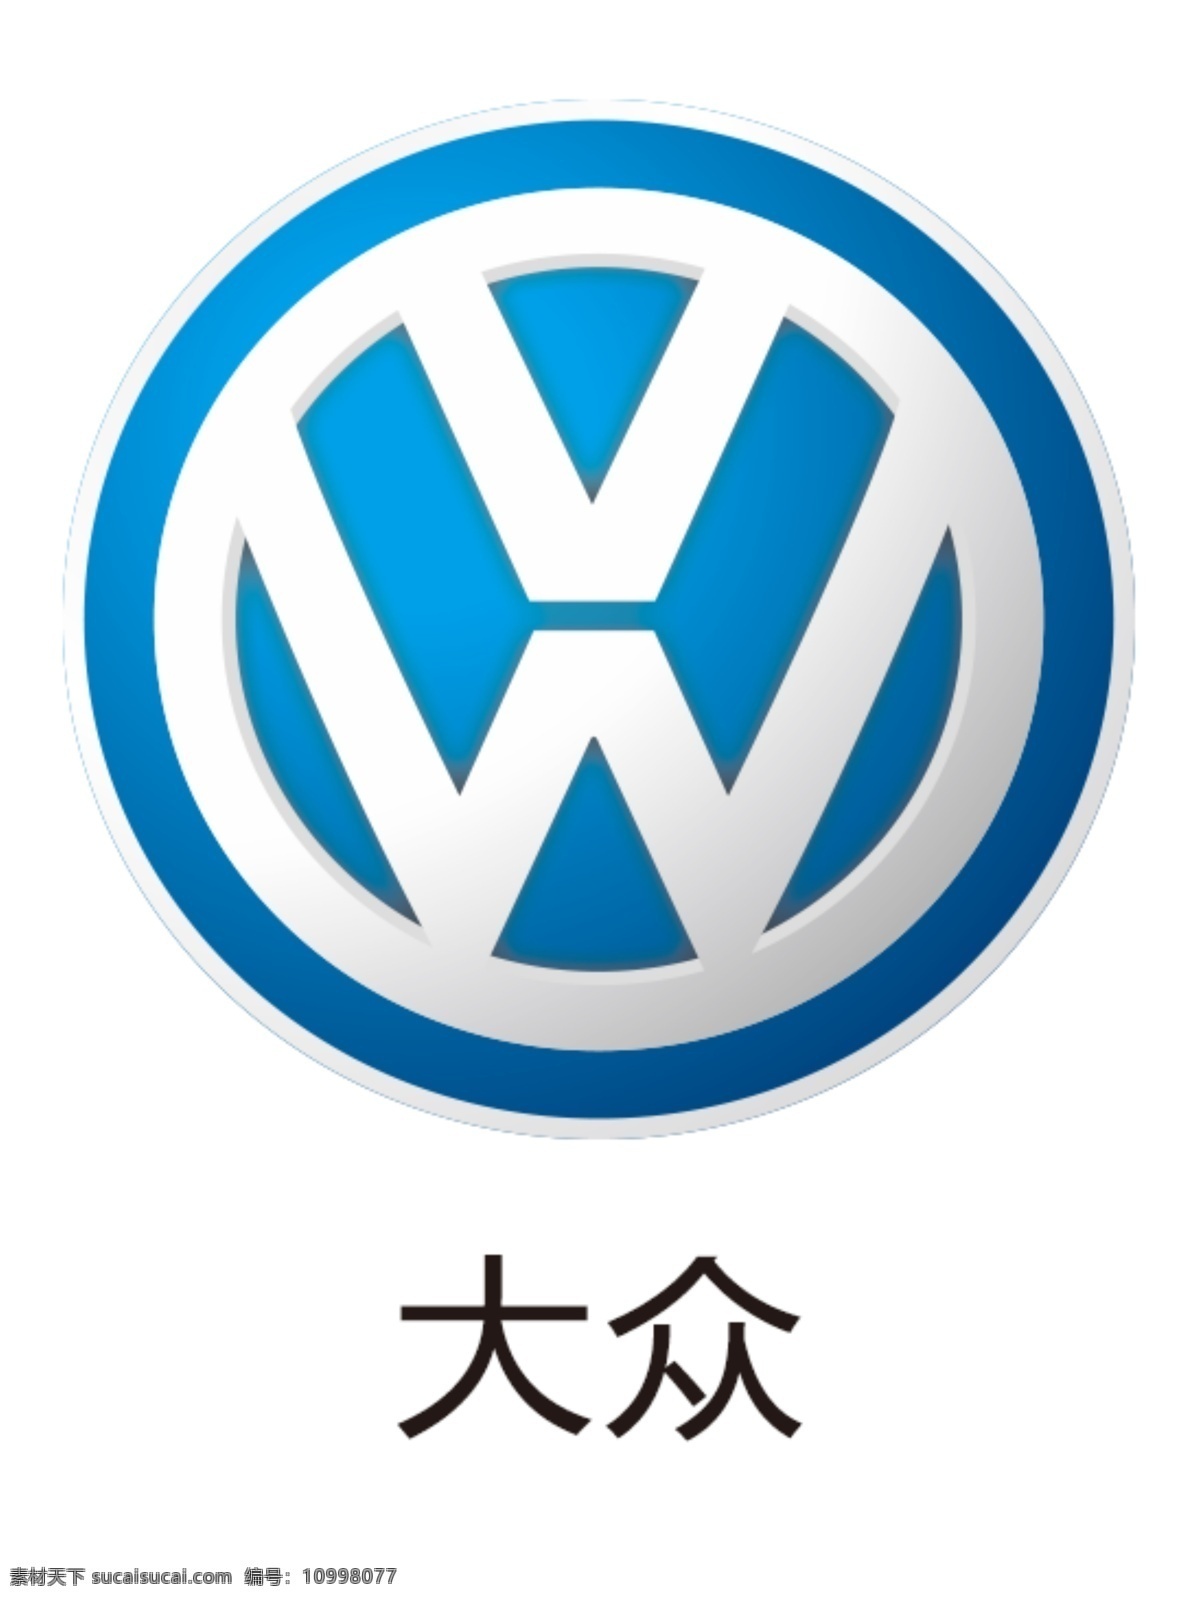 大众图片 大众 大众车标 一汽大众 上汽大众 上海大众 大众汽车 德国大众 平面设计 标志图标